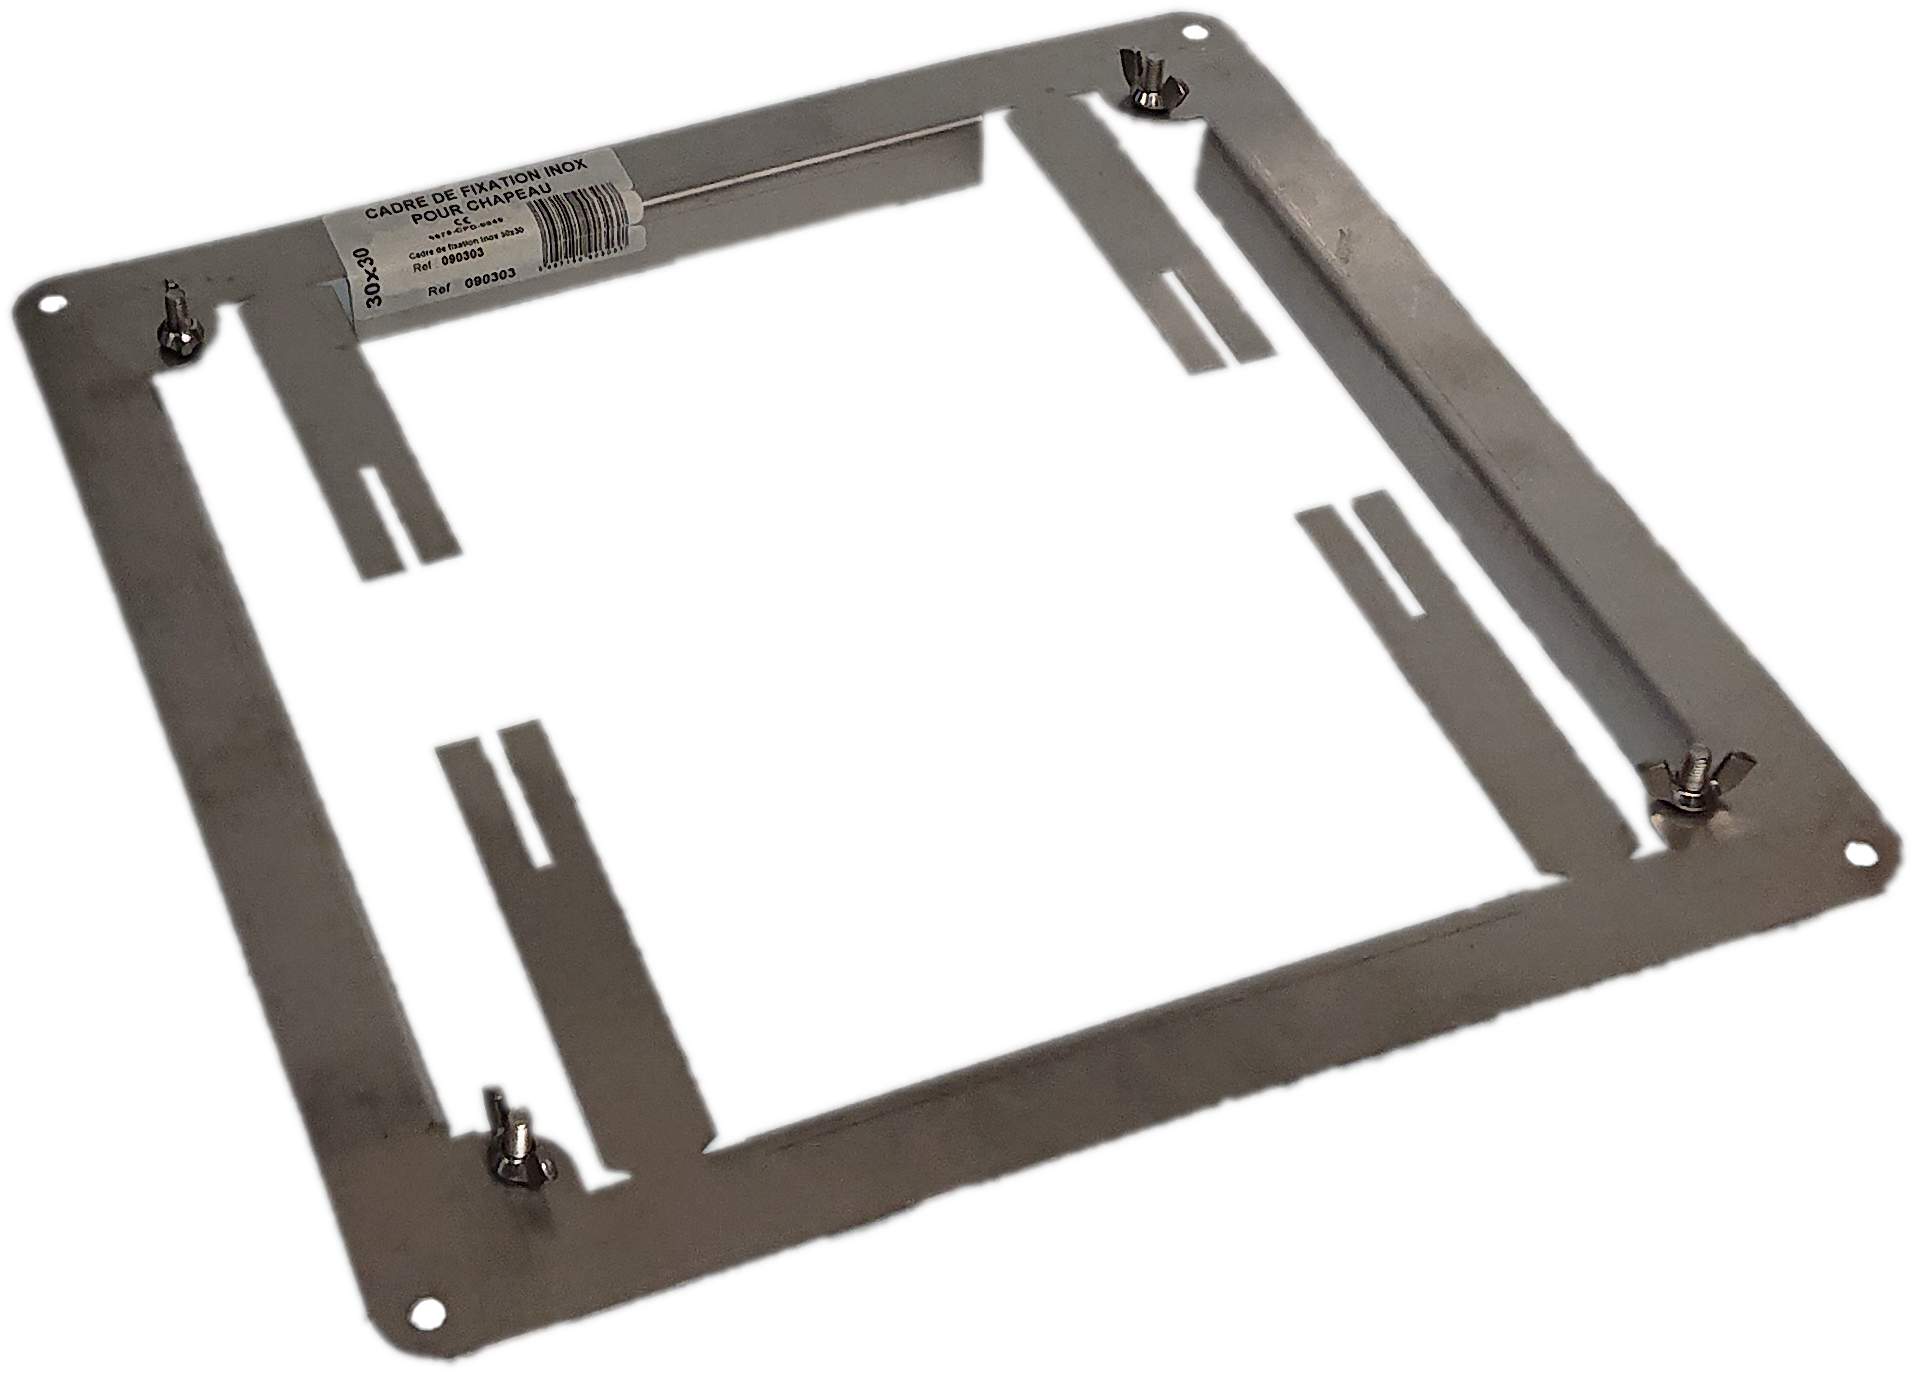 White stainless steel mounting frame for 30x30 mm bushel